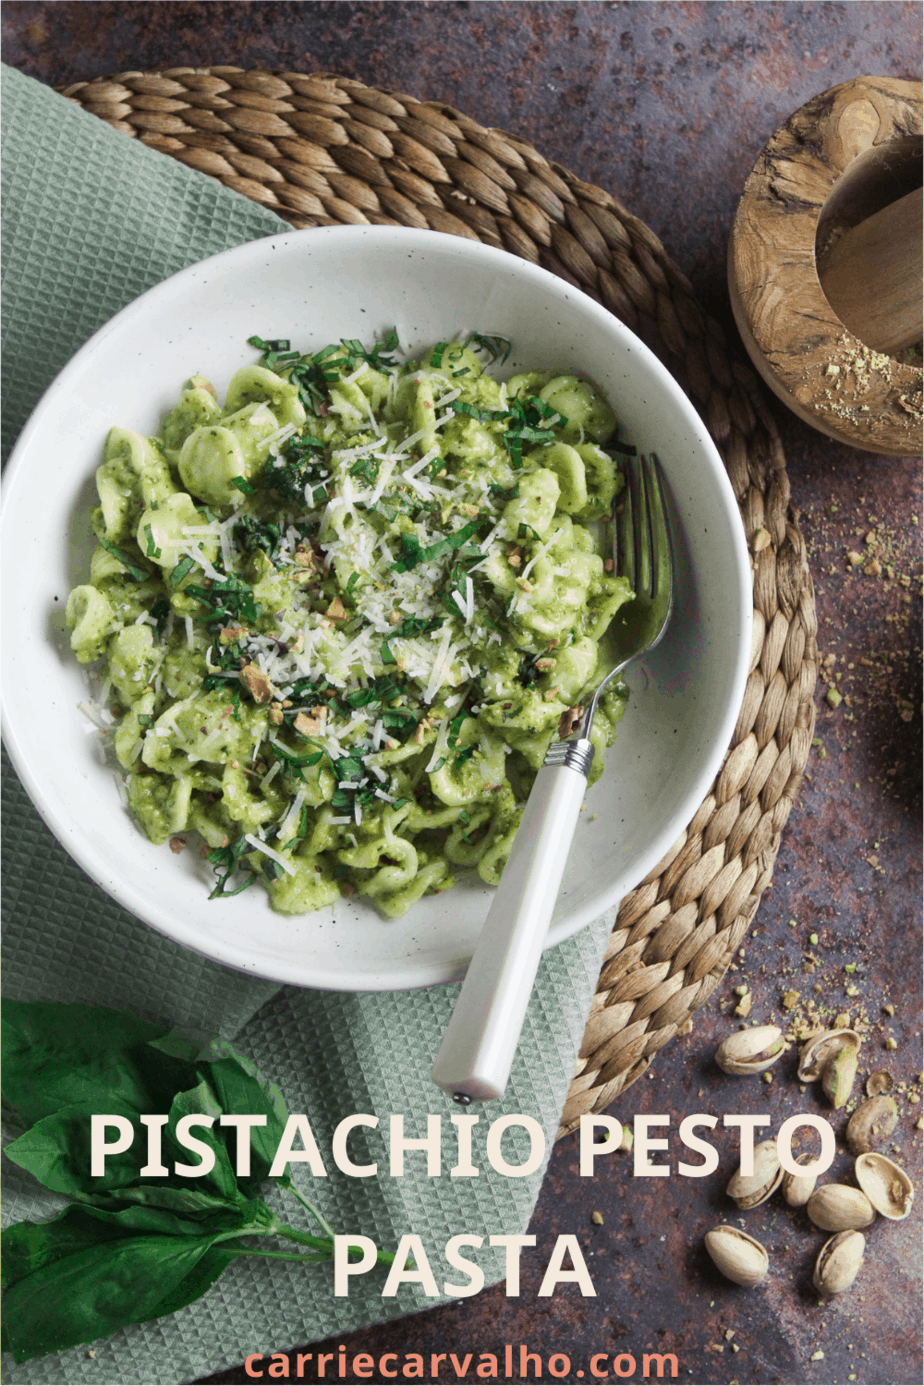 Pistachio Pesto Pasta